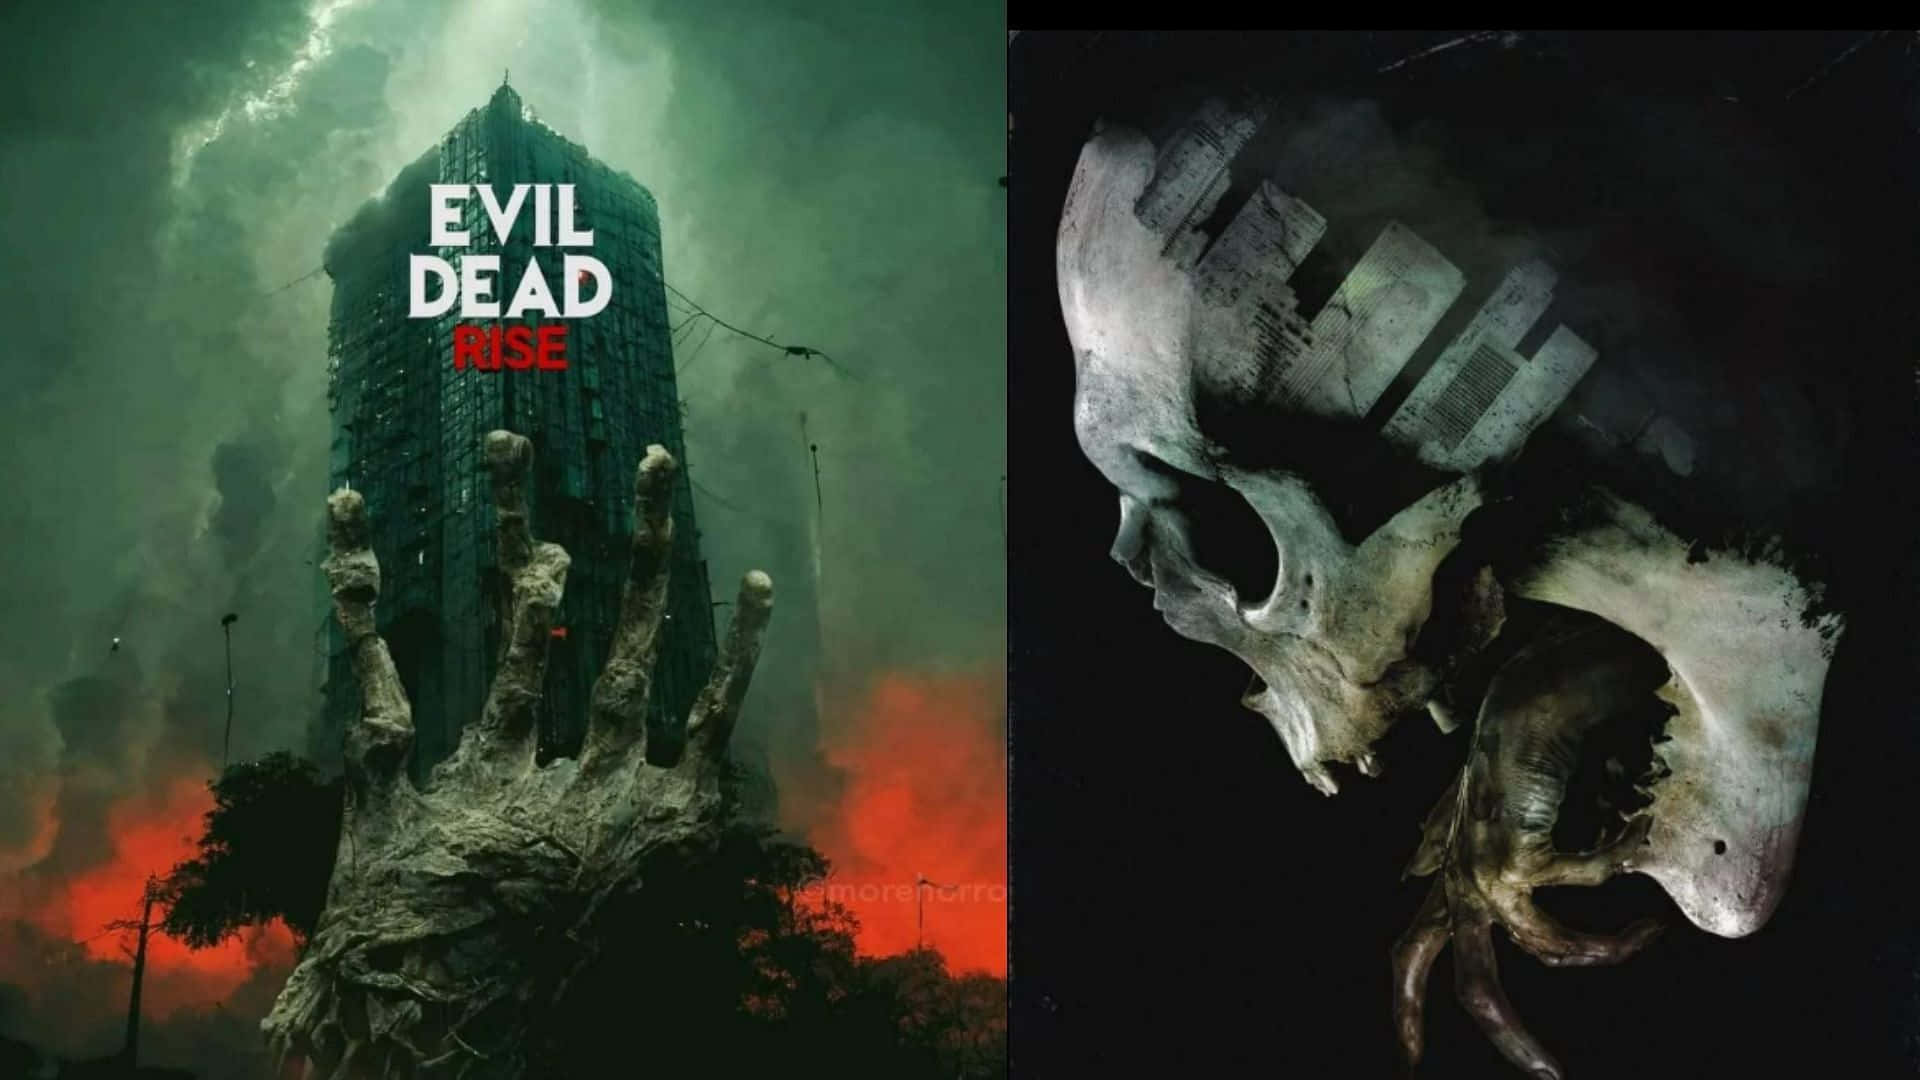 Evil Dead Rise Movie Posterand Skull Artwork Wallpaper